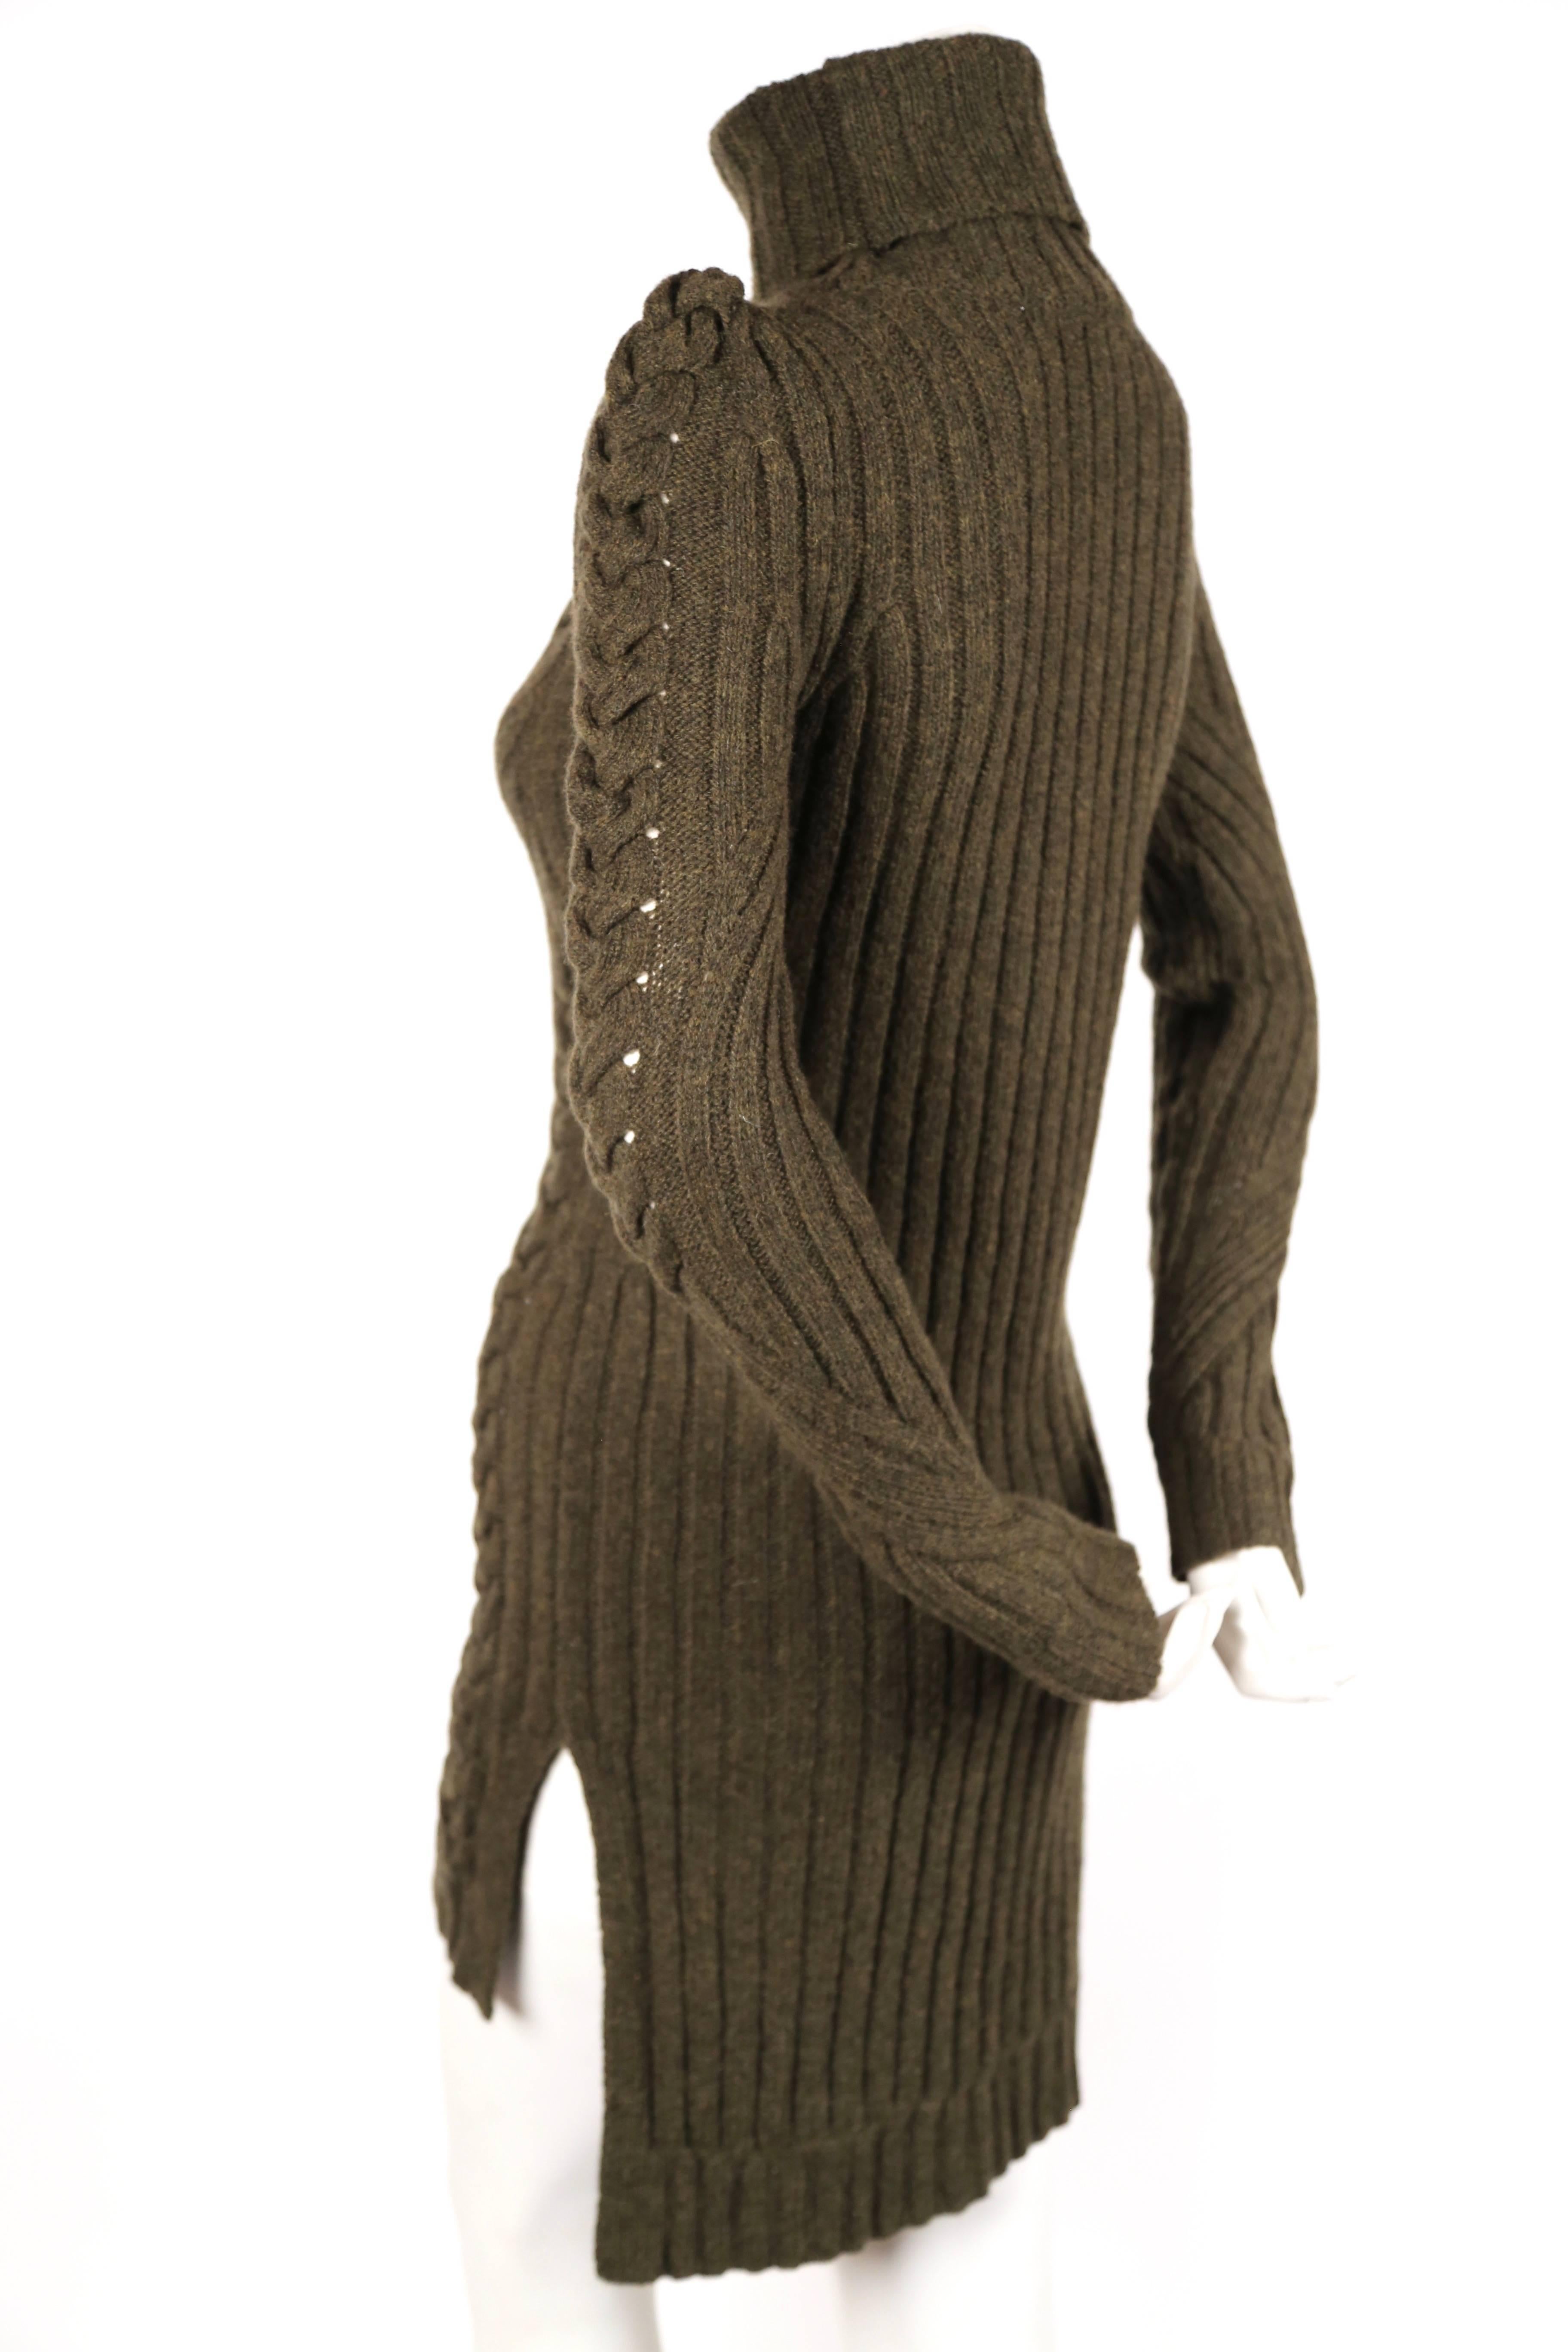 Robe pull en maille câblée vert mousse, conçue par Phoebe Philo pour Celine dans le cadre de la collection pré automne 2010. Peut être porté comme un pull ou une robe. Taille S. Mesures approximatives (non étiré) : 15